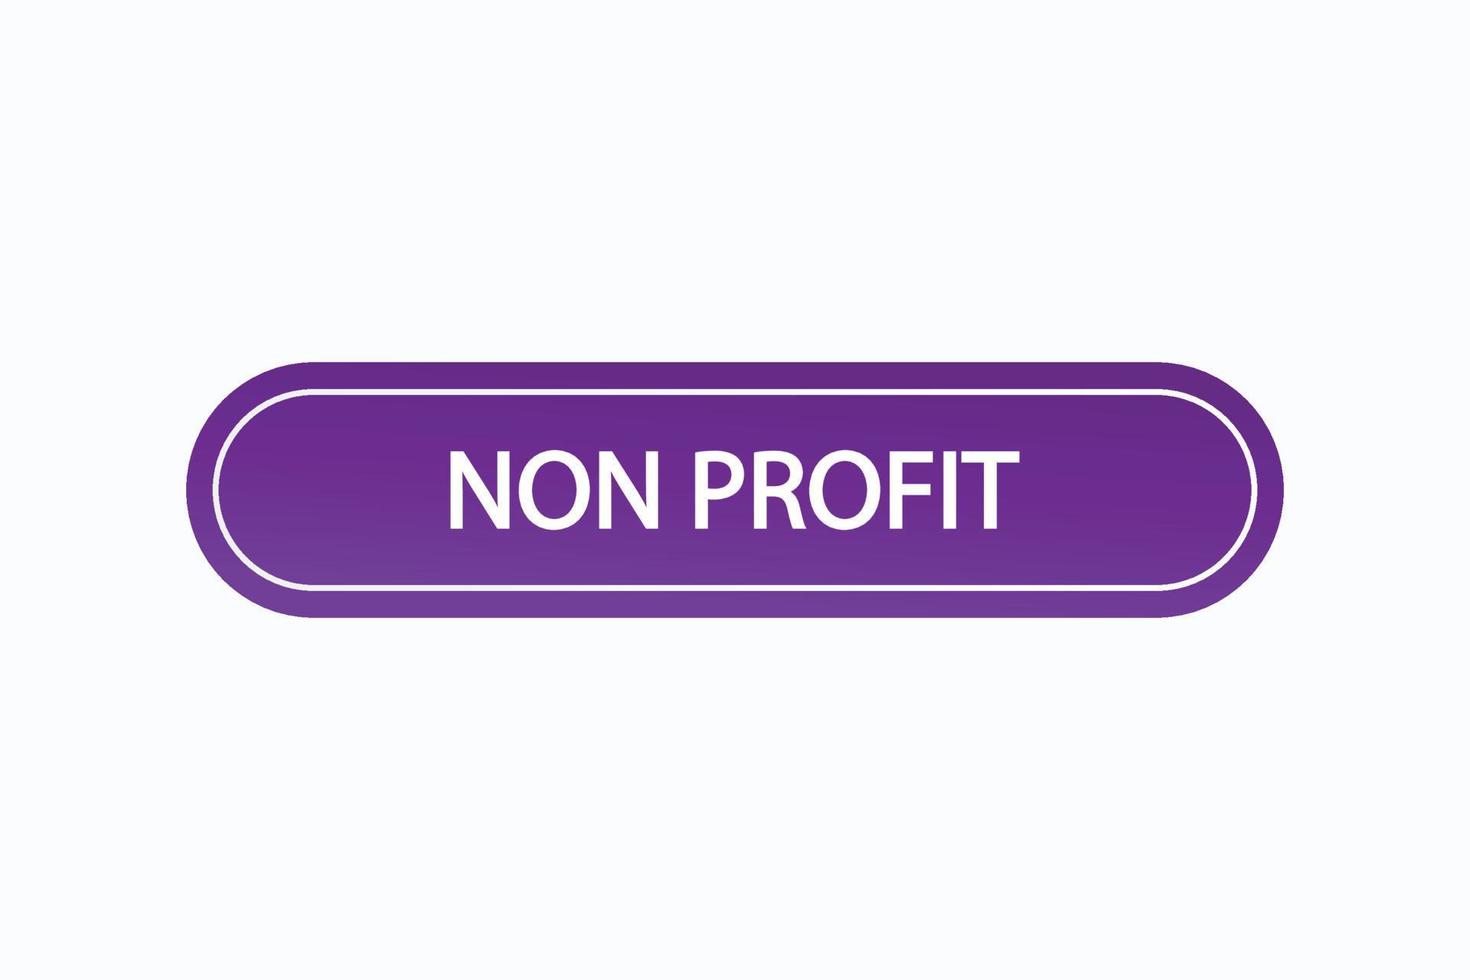 non profit button vectors.sign label speech bubble non profit vector